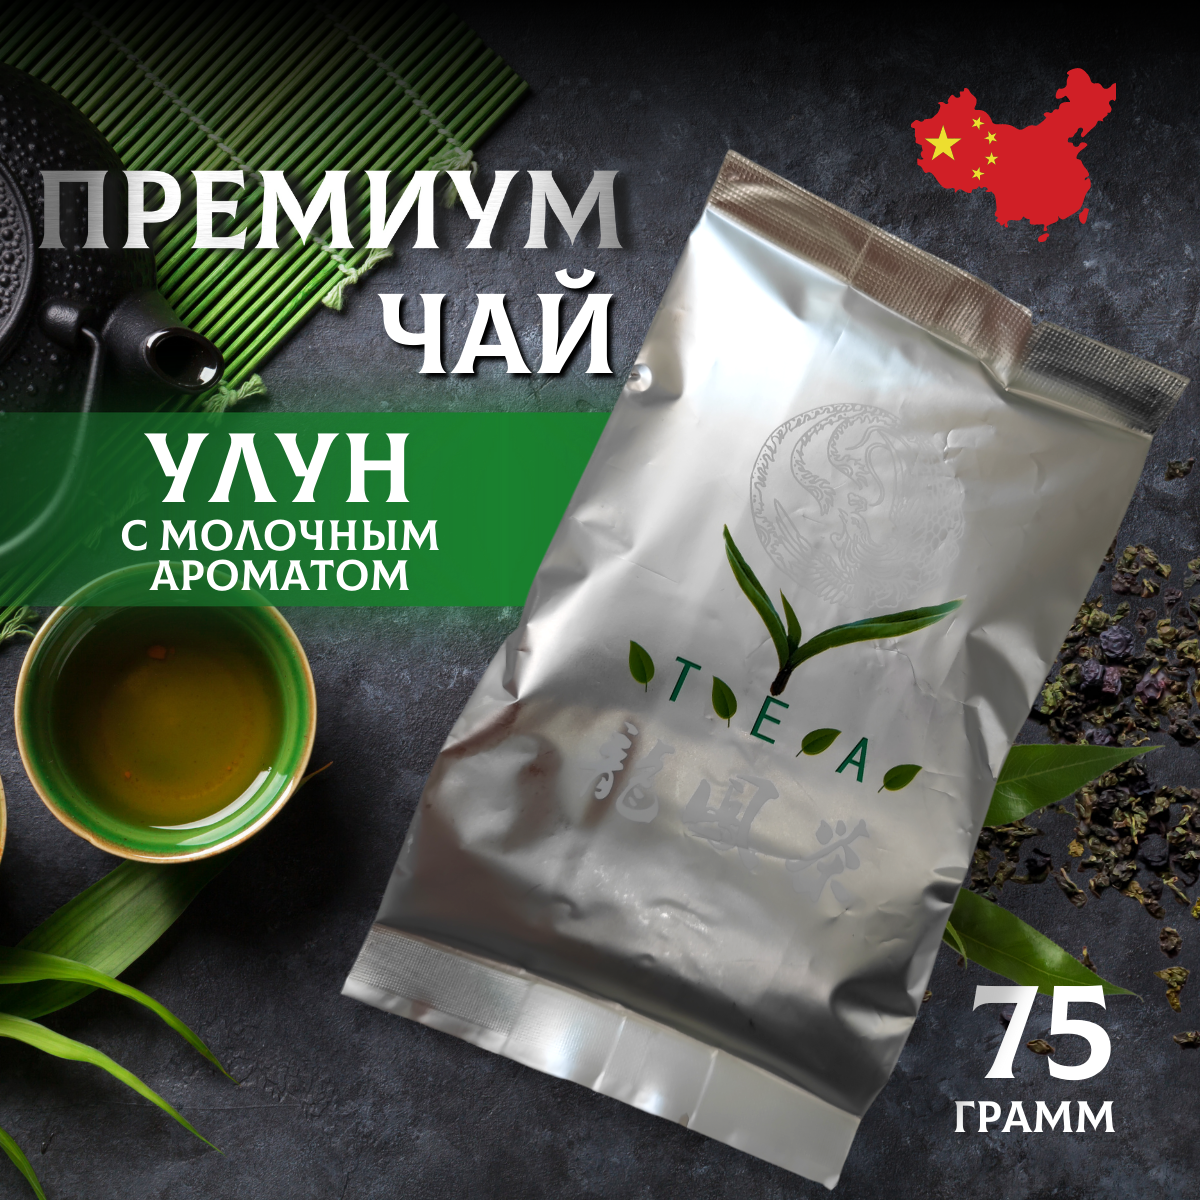 Настоящий Элитный Абсолютно Натуральный Зеленый Китайский чай Молочный Улун Най Сян из провинции Фуцзянь 75 гр.